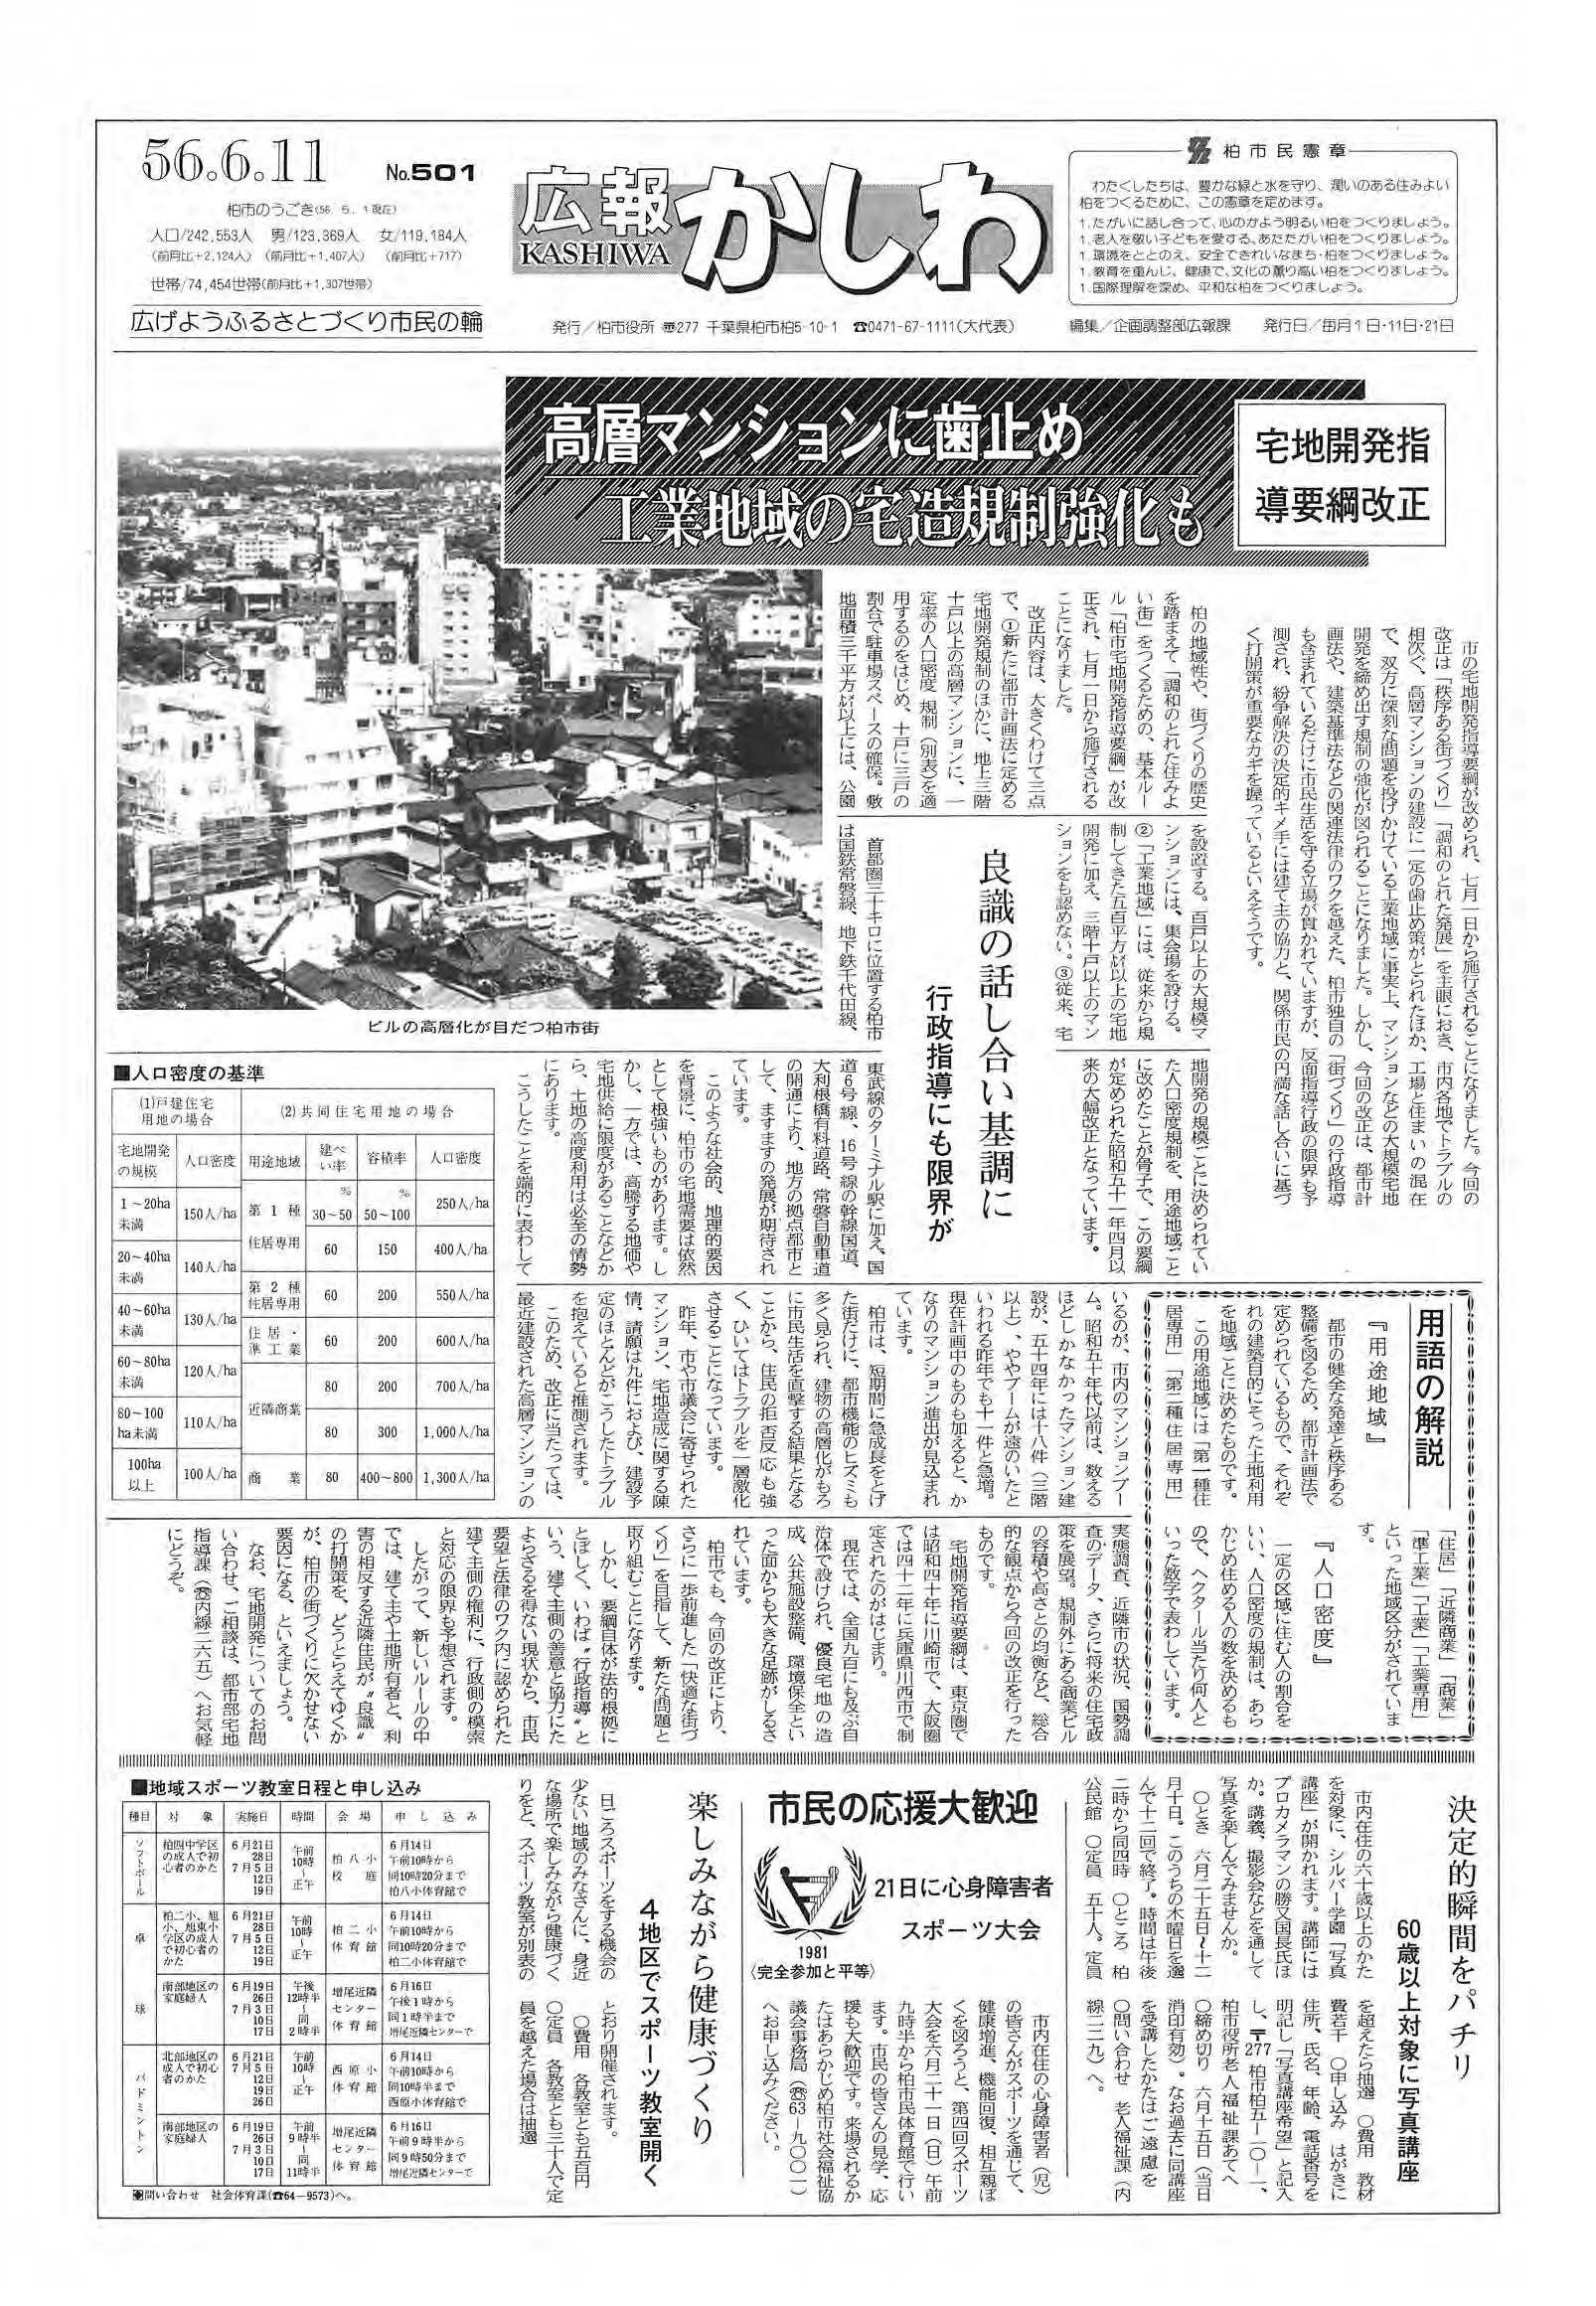 広報かしわ　昭和56年6月11日発行　501号